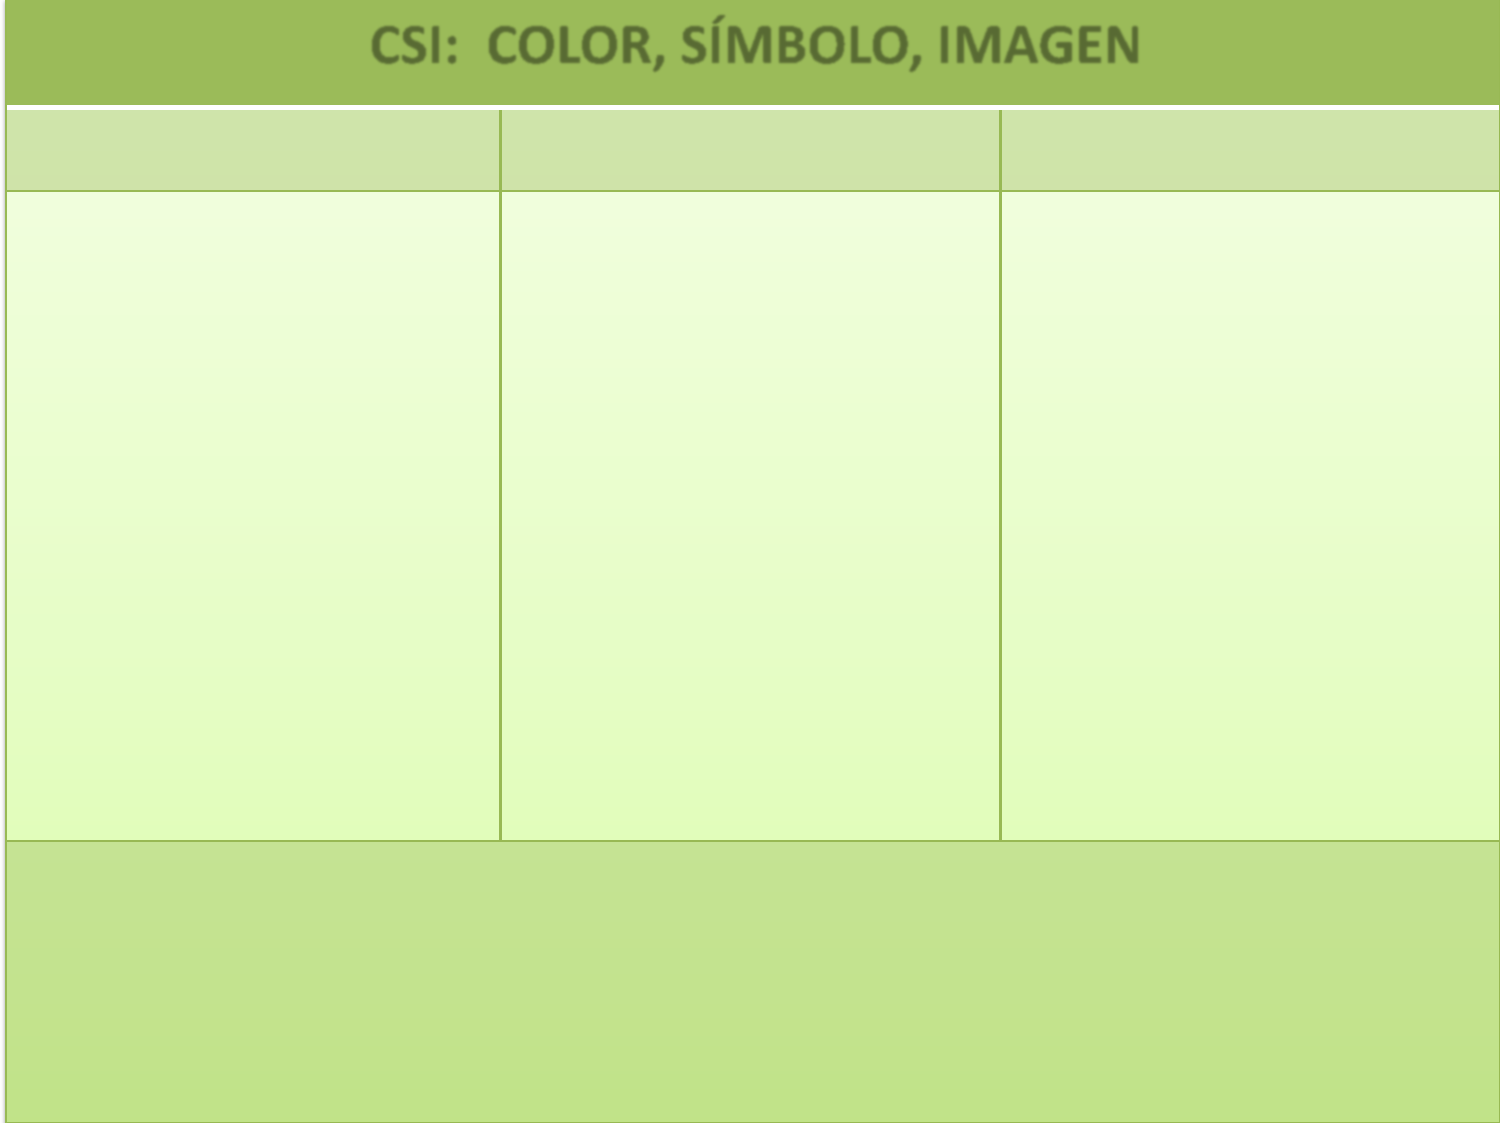 CSI: COLOR, SÍMBOLO, IMAGEN Idea 1 Idea 2 Idea 3 Color Qué color elegirías para representar esa idea?